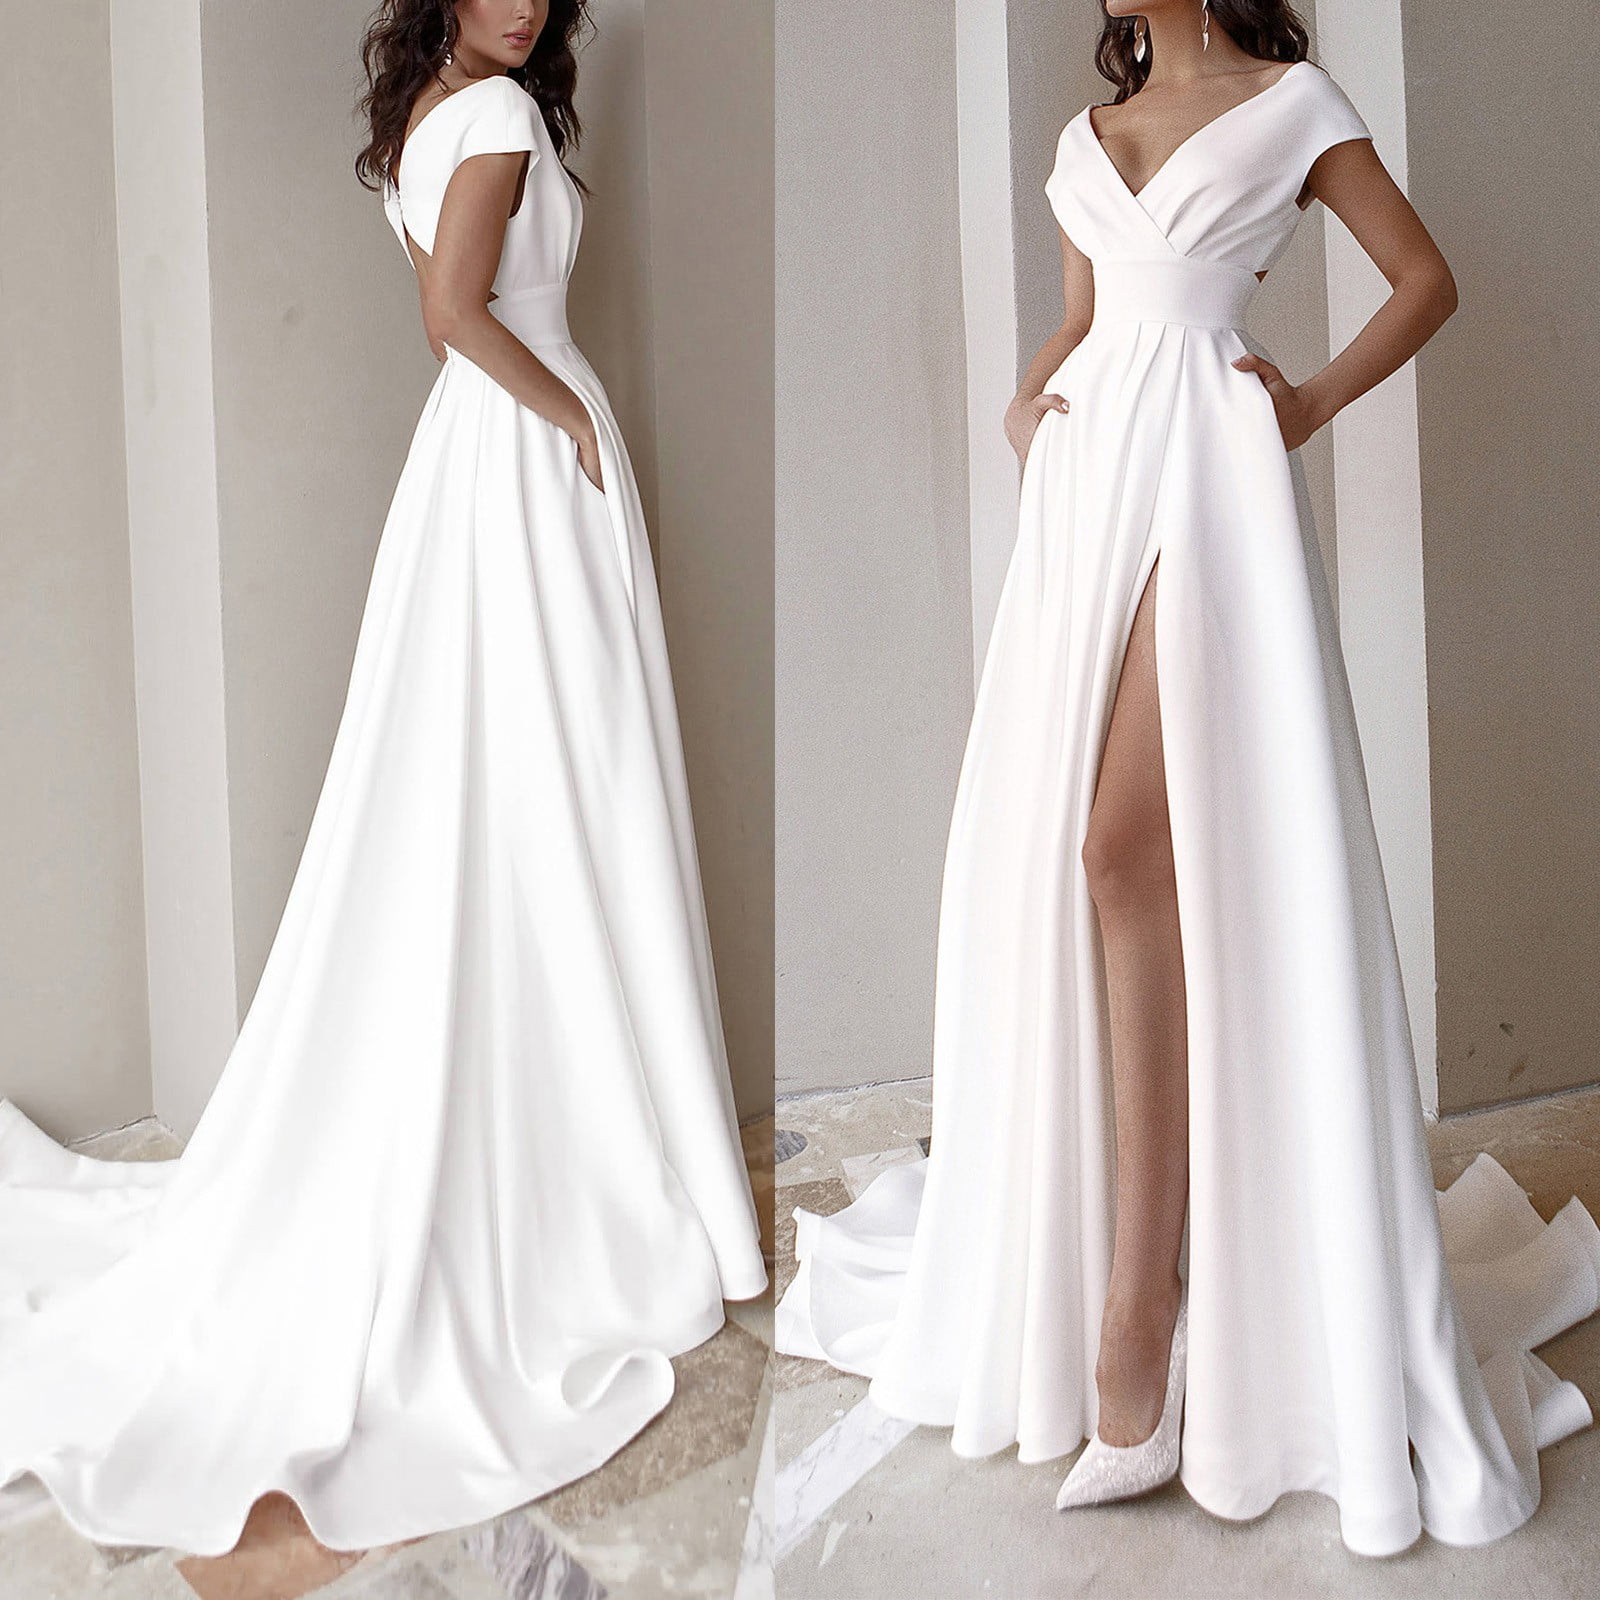 white formal dresses